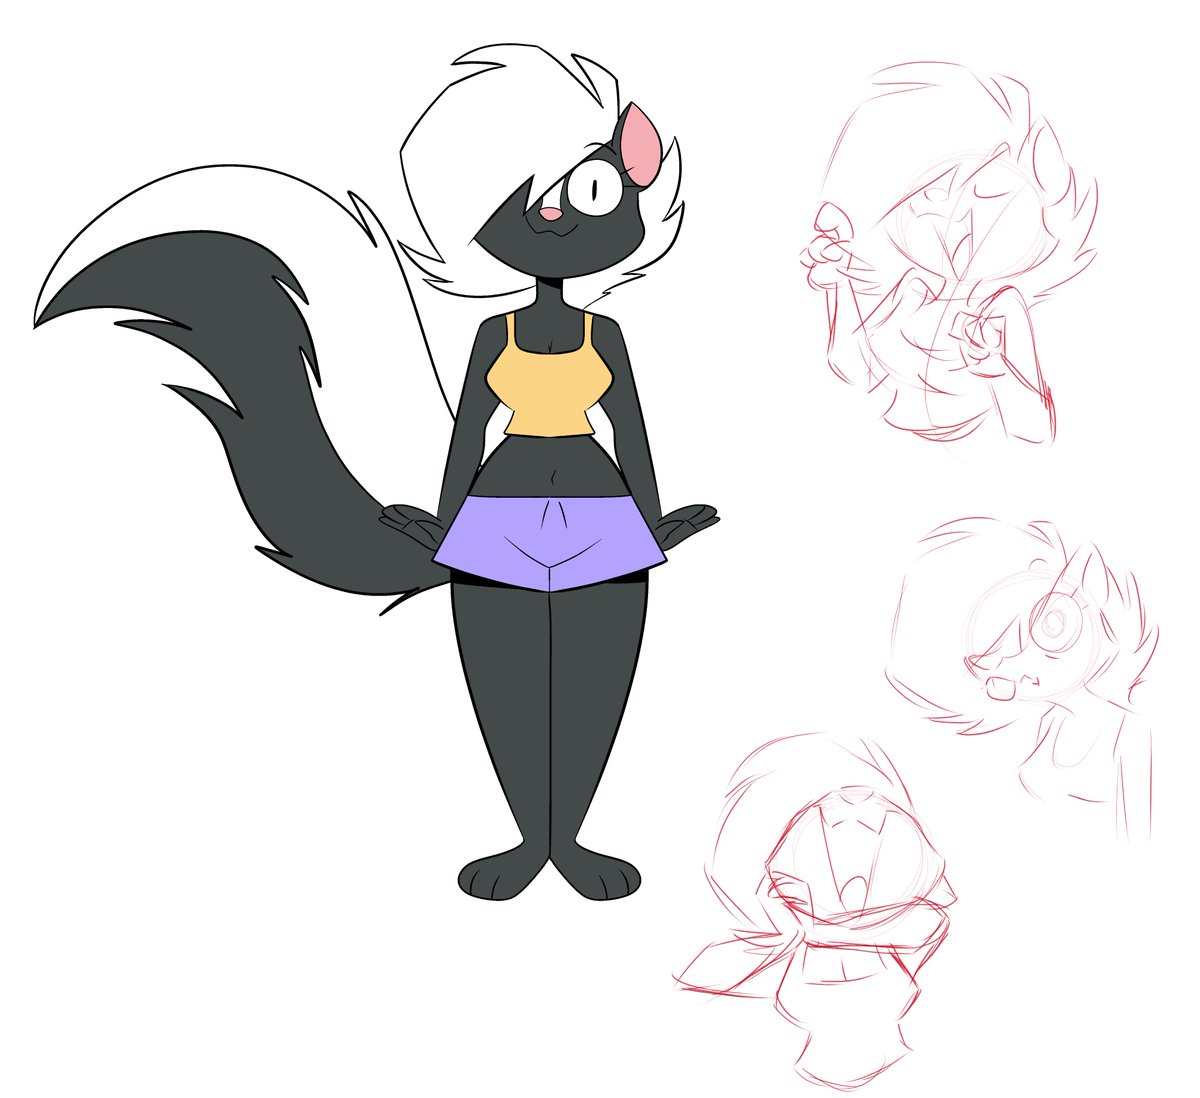 Doodled a lil funny skunk